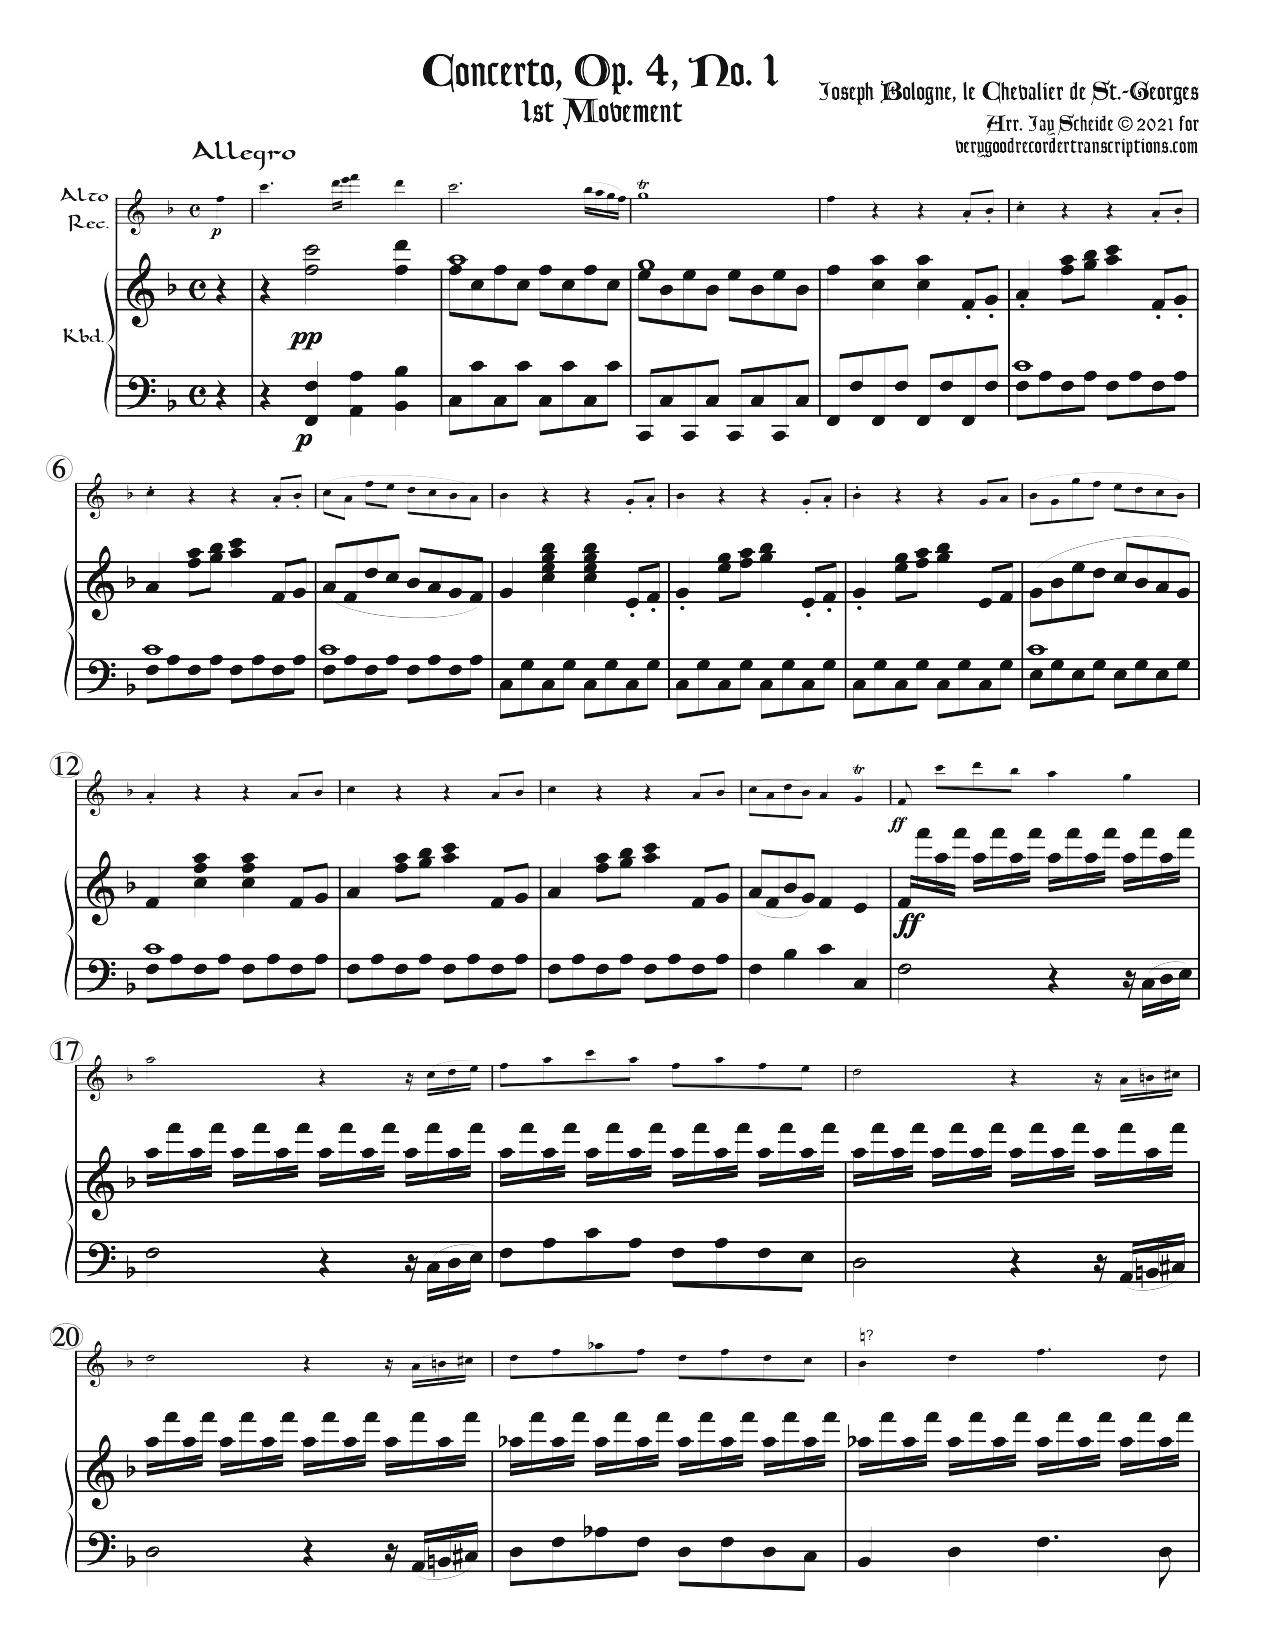 Four Concertos, Op. 4, No. 1; Op. 5, No. 1 & 2, and Op. 7, No. 1